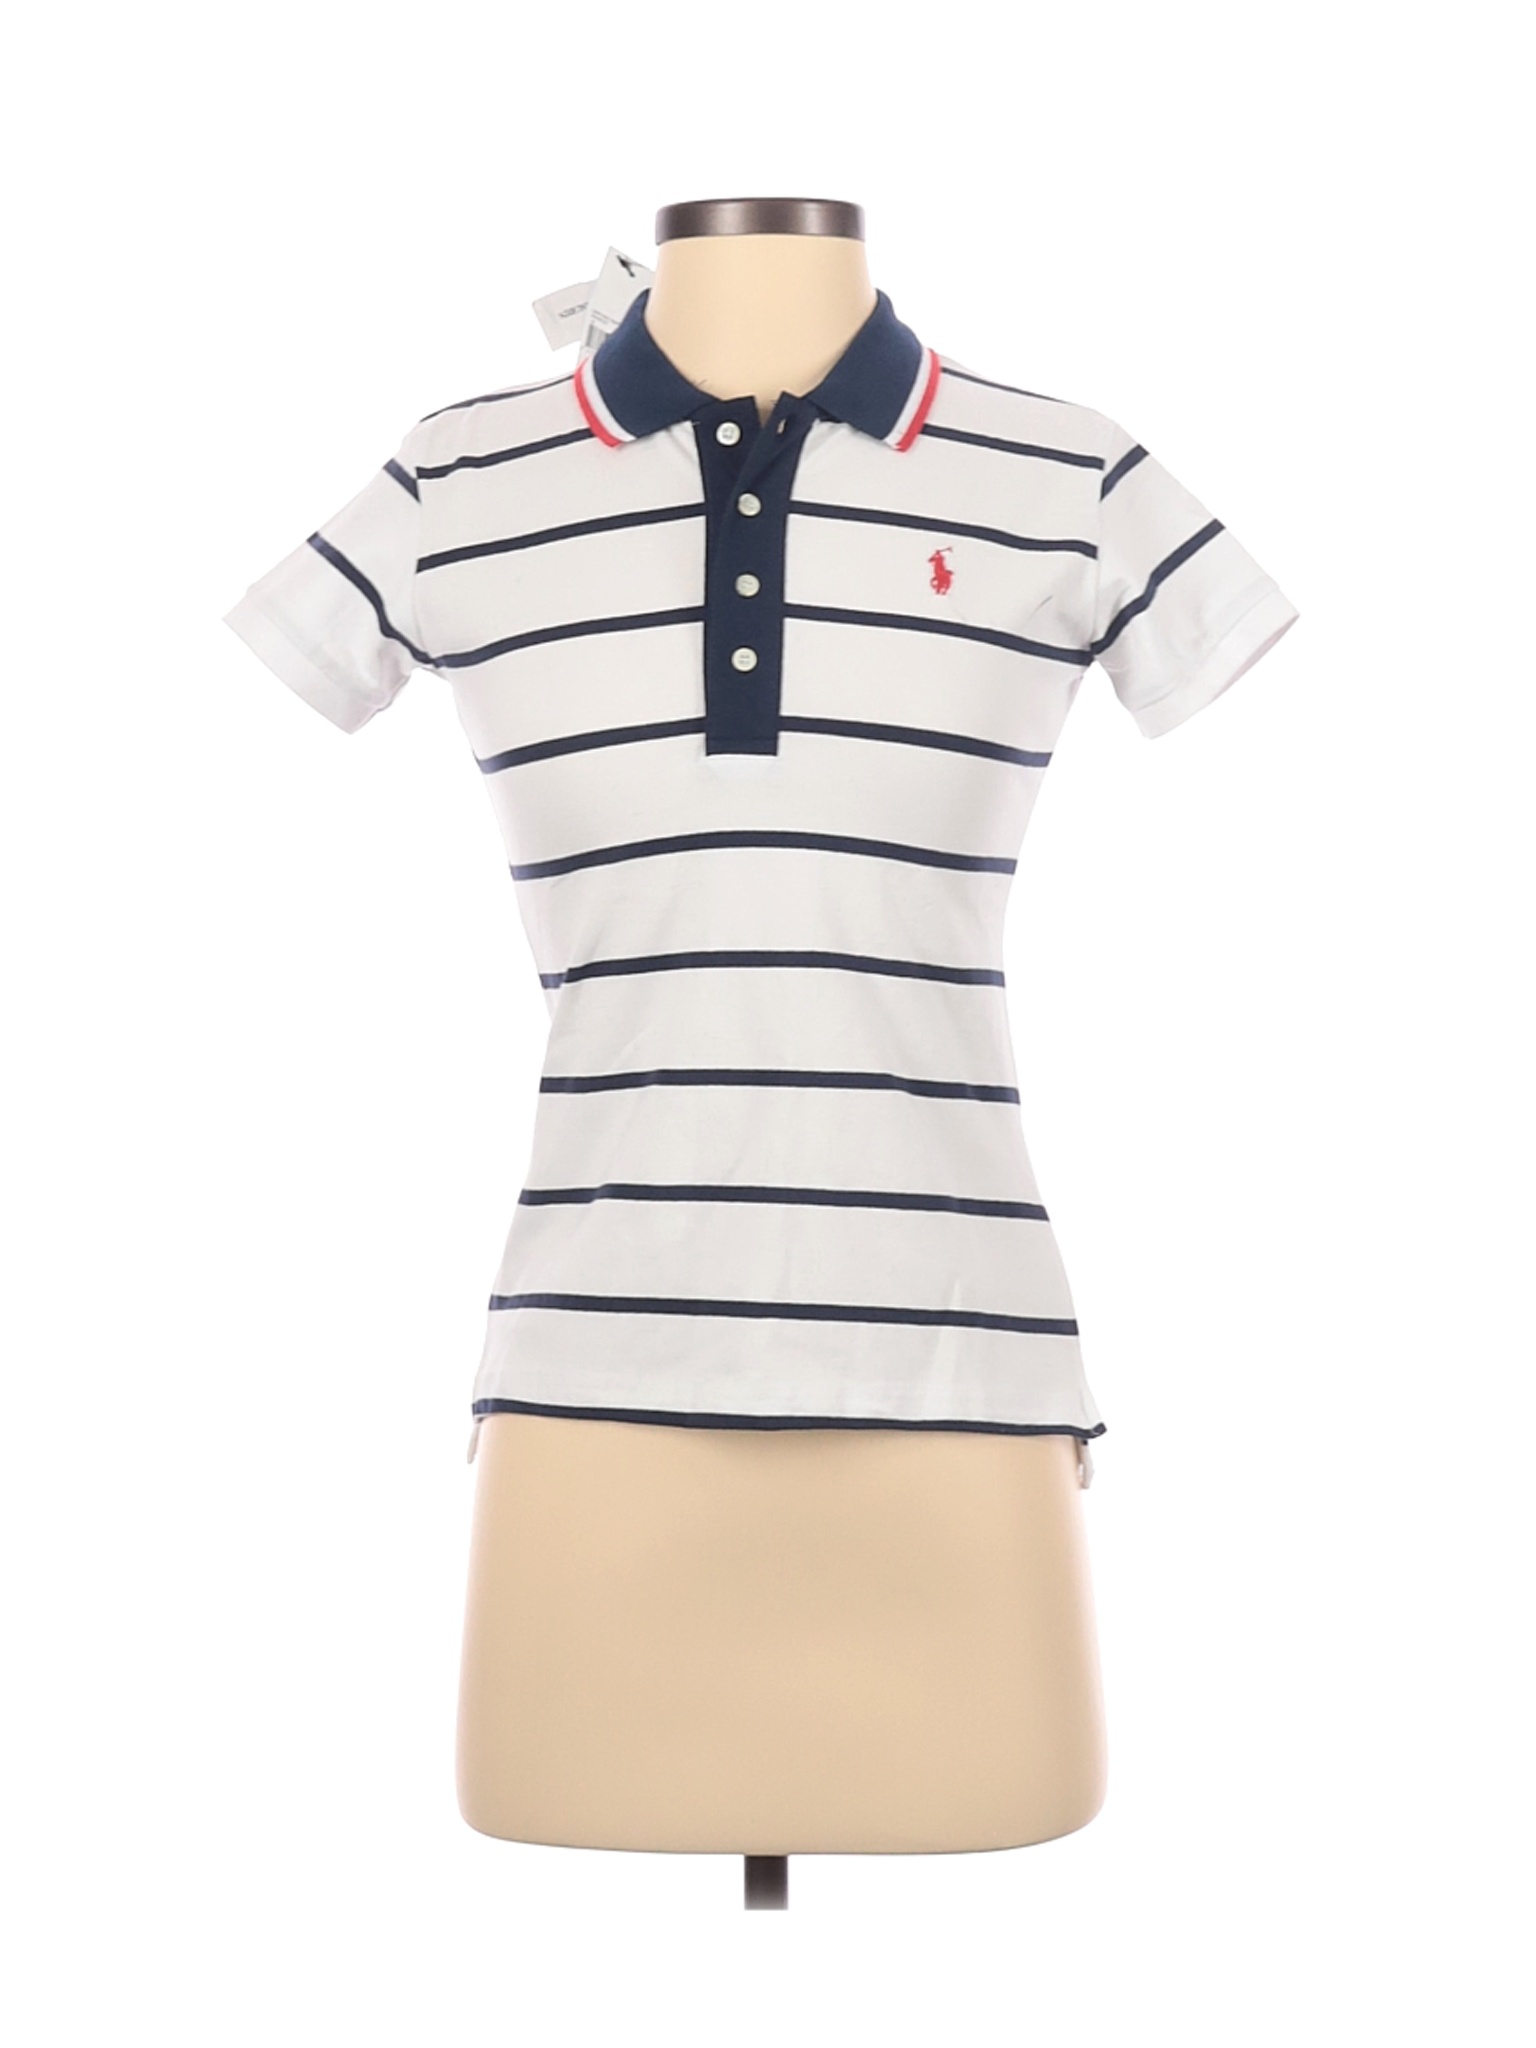 NWT Ralph Lauren Women White Short Sleeve Polo S | eBay